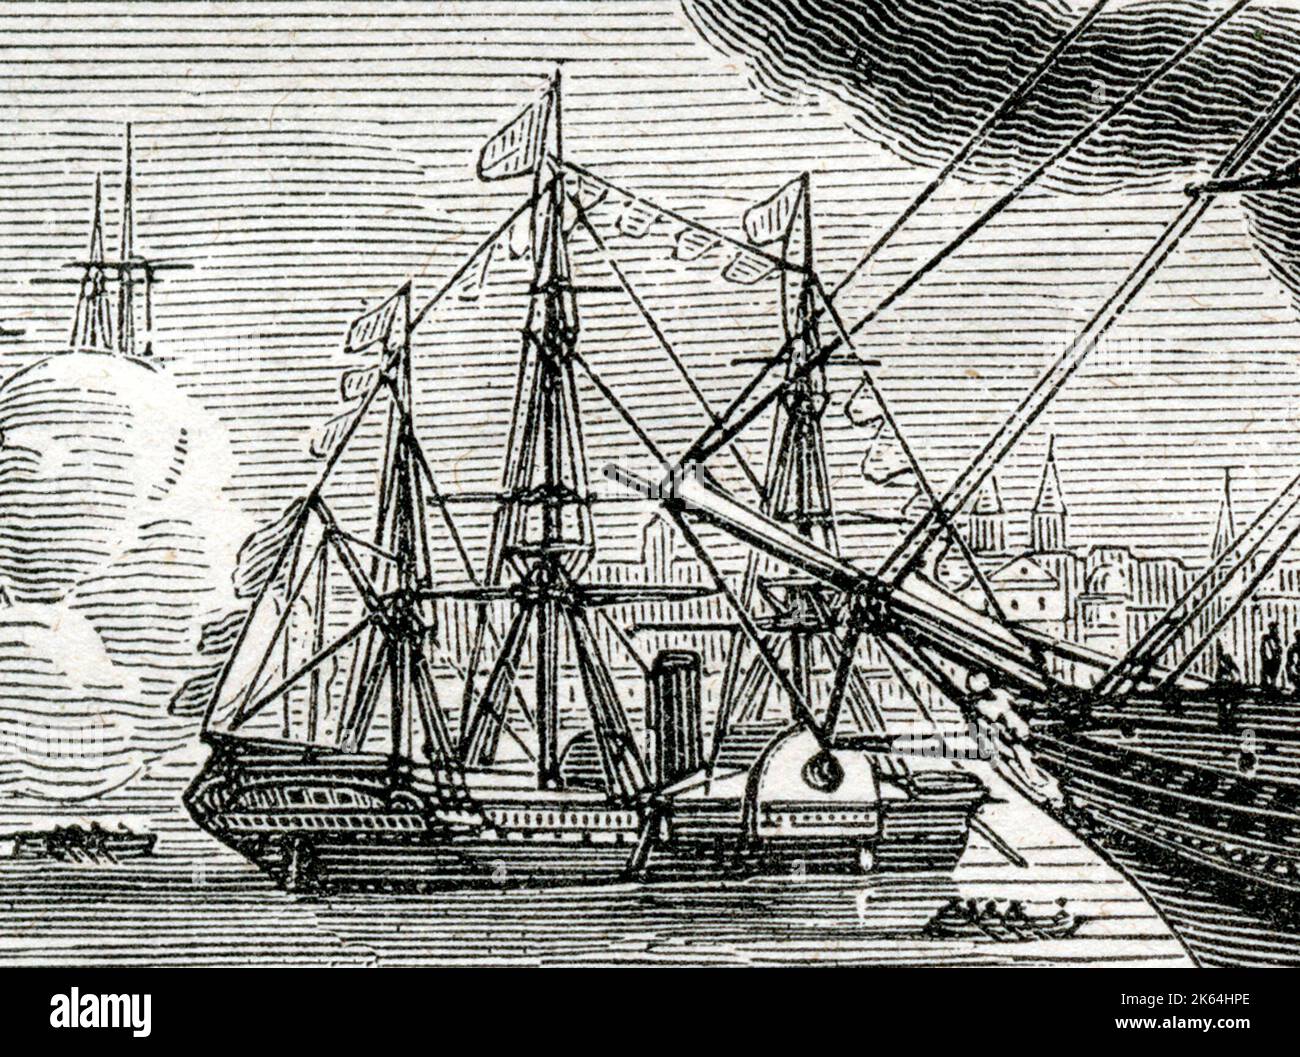 SS Sirius - ein im Jahr 1837 von Robert Menzies & Sons of Leith, Schottland, gebautes Sidewheel-Dampfschiff mit Holzrumpf für die London-Cork-Strecke, die von der Saint George Steam Packet Company betrieben wird. Im Jahr 1838 trat sie in den transatlantischen Passagierdienst ein, als sie von der britischen und amerikanischen Steam Navigation Company für zwei Fahrten gechartert wurde. Da sie einen Tag vor dem Great Western in New York ankommt, wird sie normalerweise als erste Inhaberin des Blue Riband aufgeführt (dieses Bild ist ein Detail eines größeren Bildes 10049294, das auch den Great Western zeigt). Stockfoto